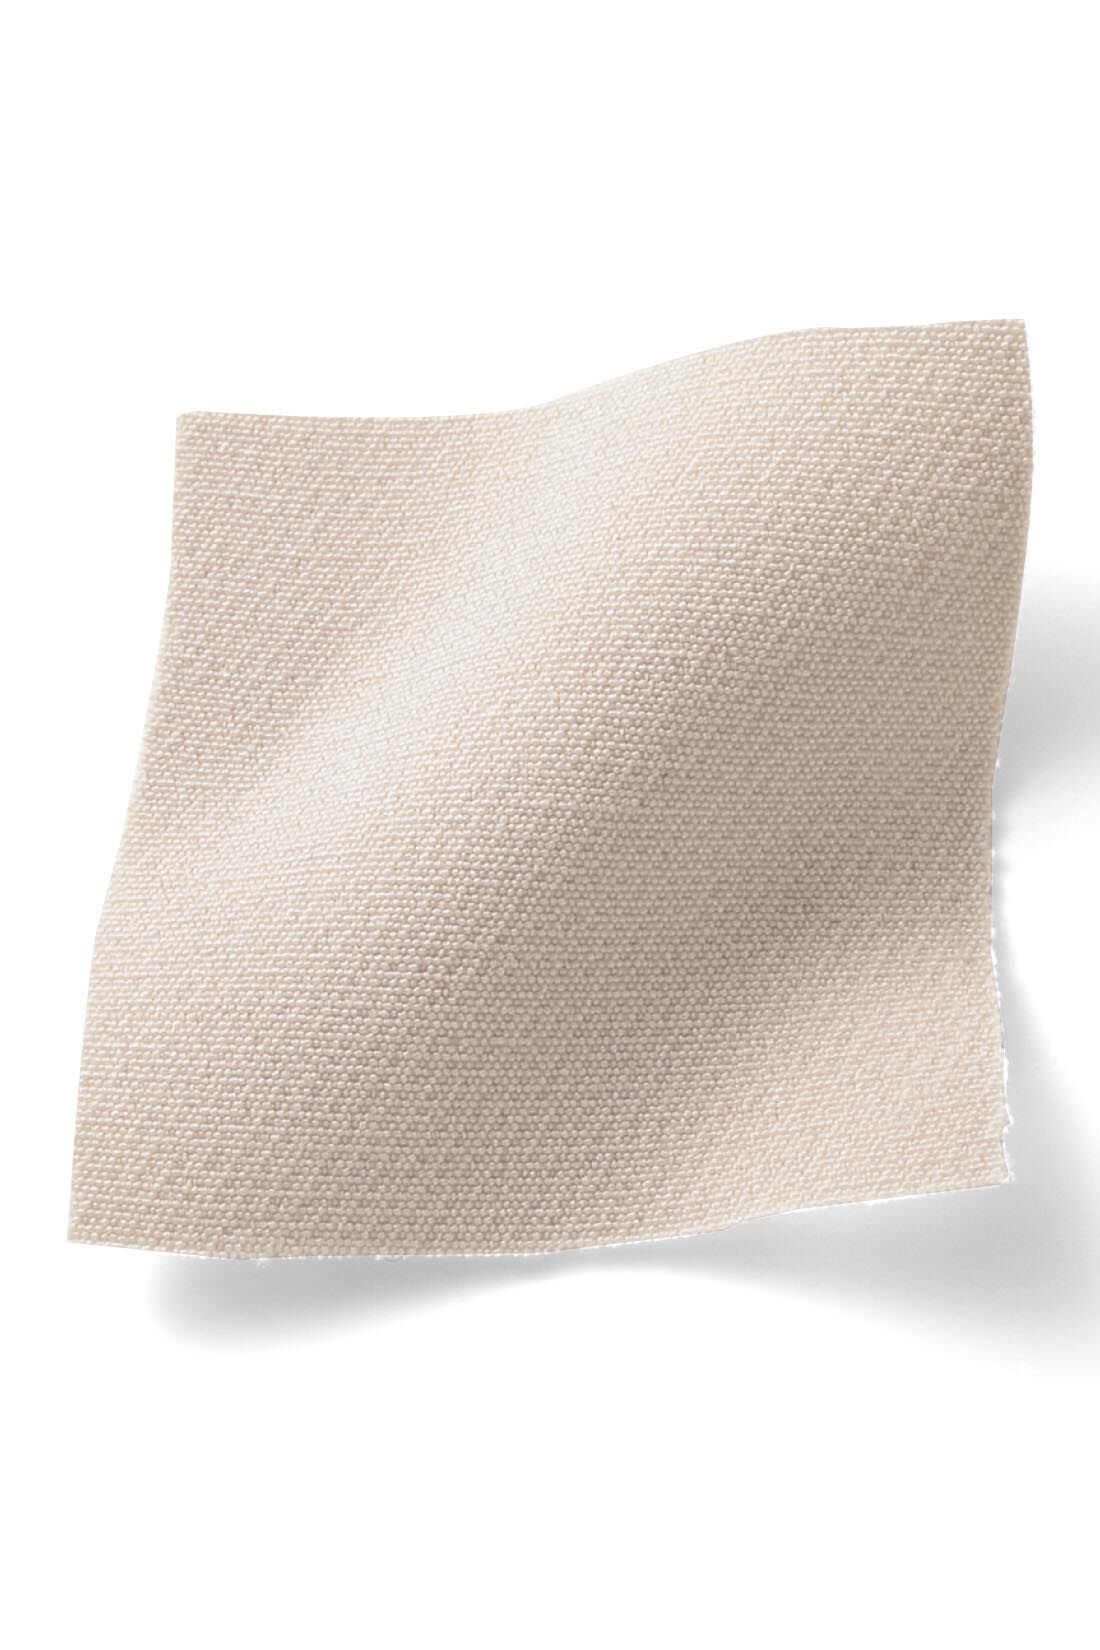 Real Stock|IEDIT シルエットがきれいなフロントタックテーパードパンツ〈ベージュ〉|クラス感たっぷりの厚手布はく素材。